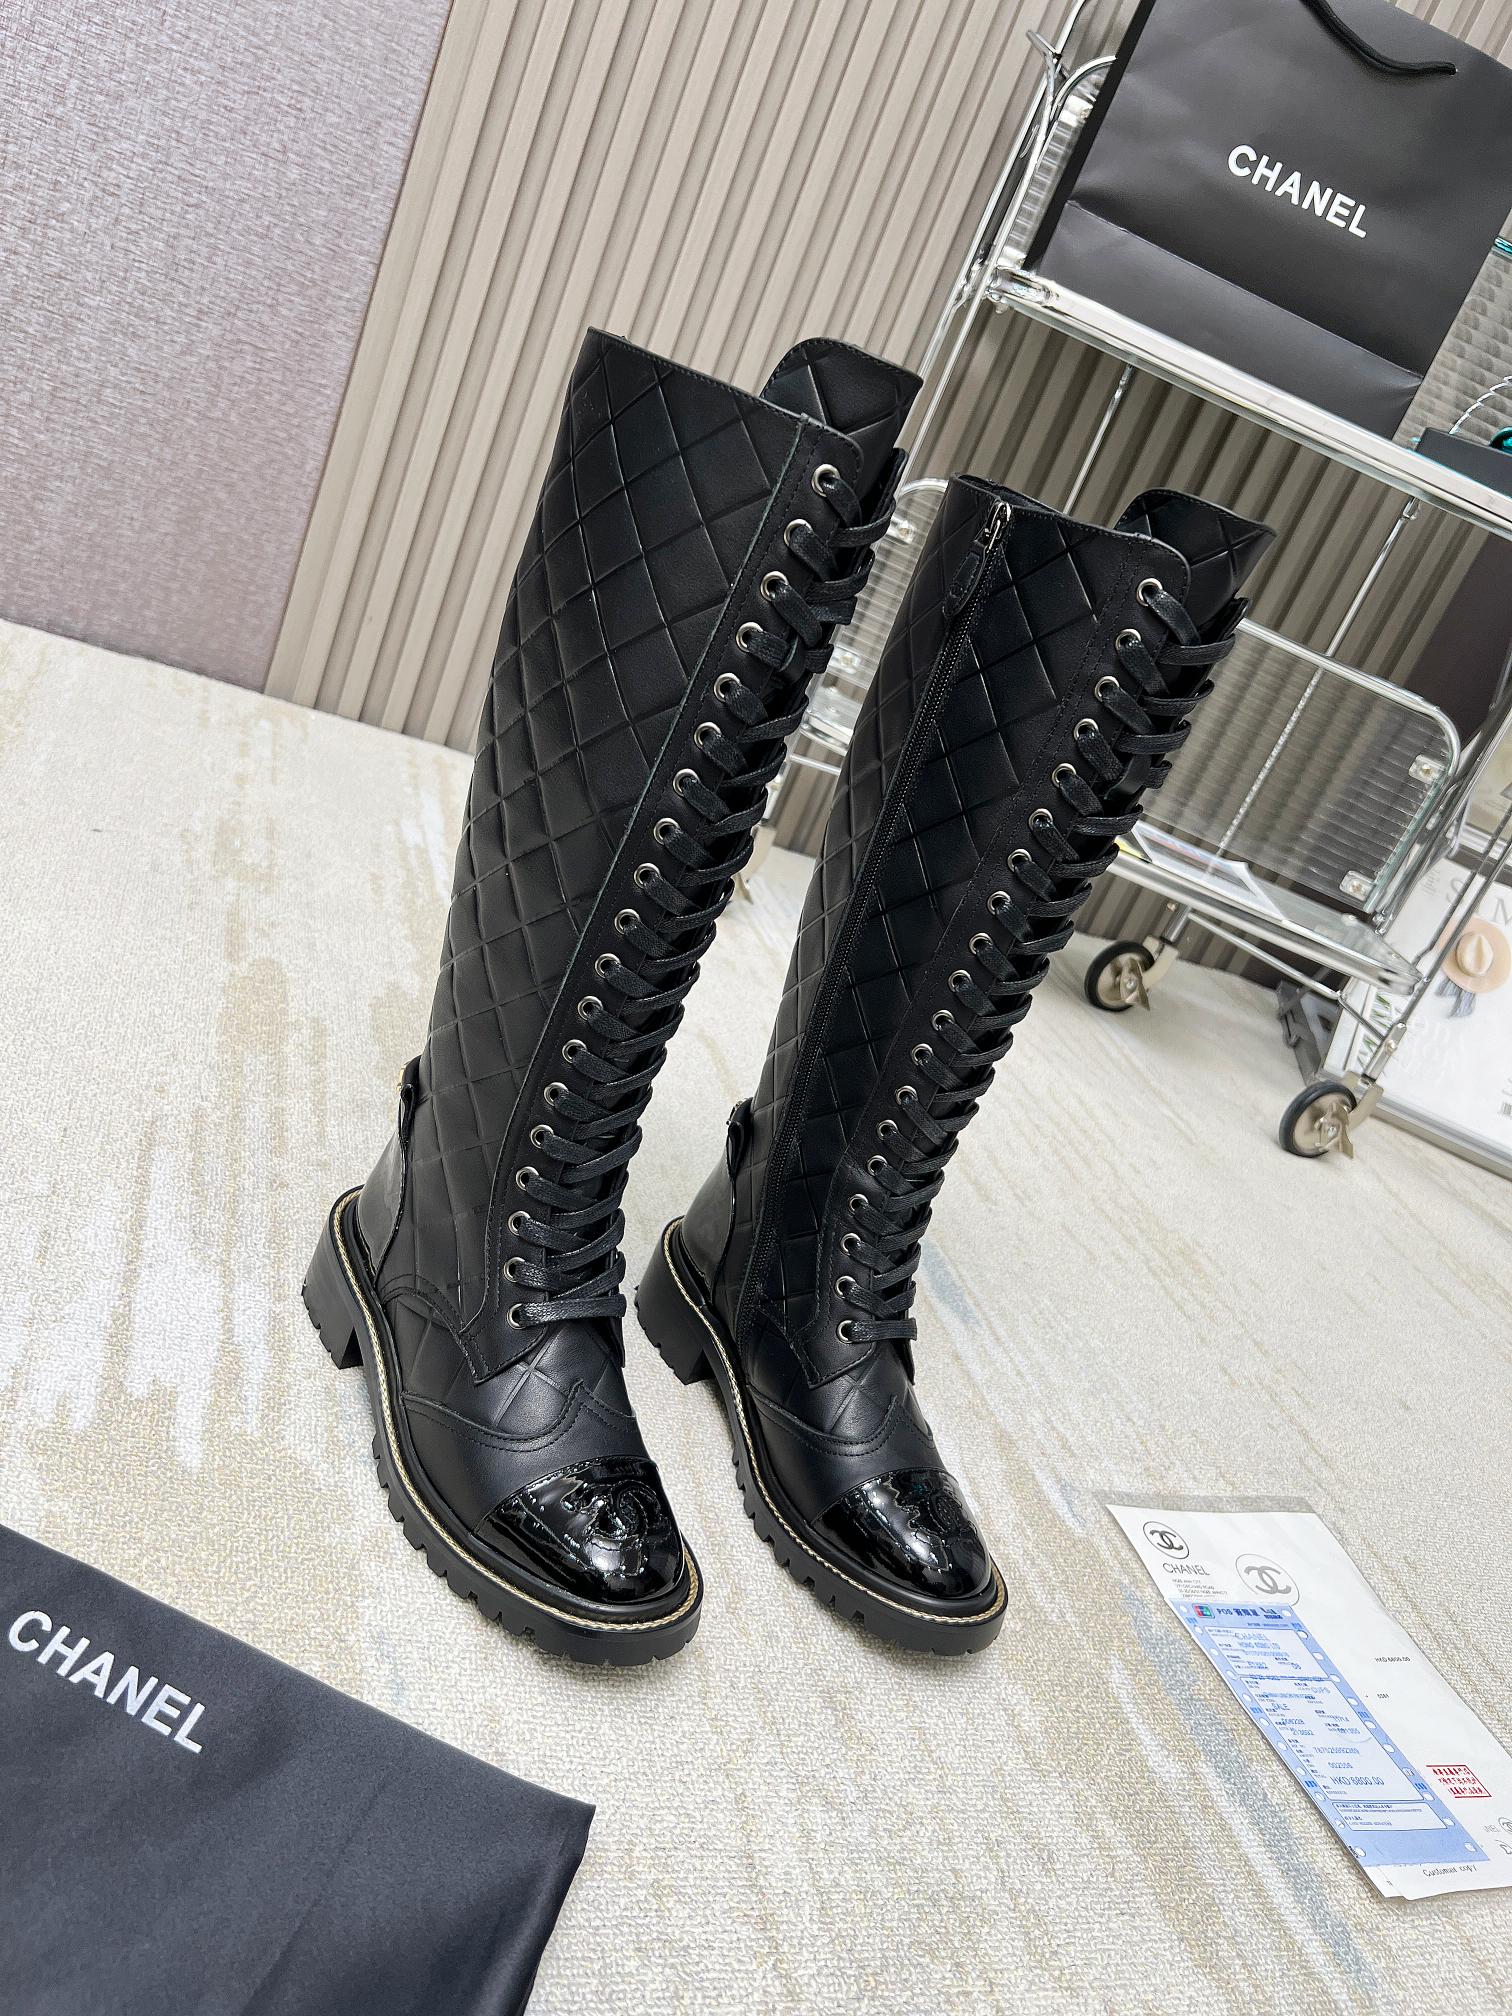 cc new women long boots 02